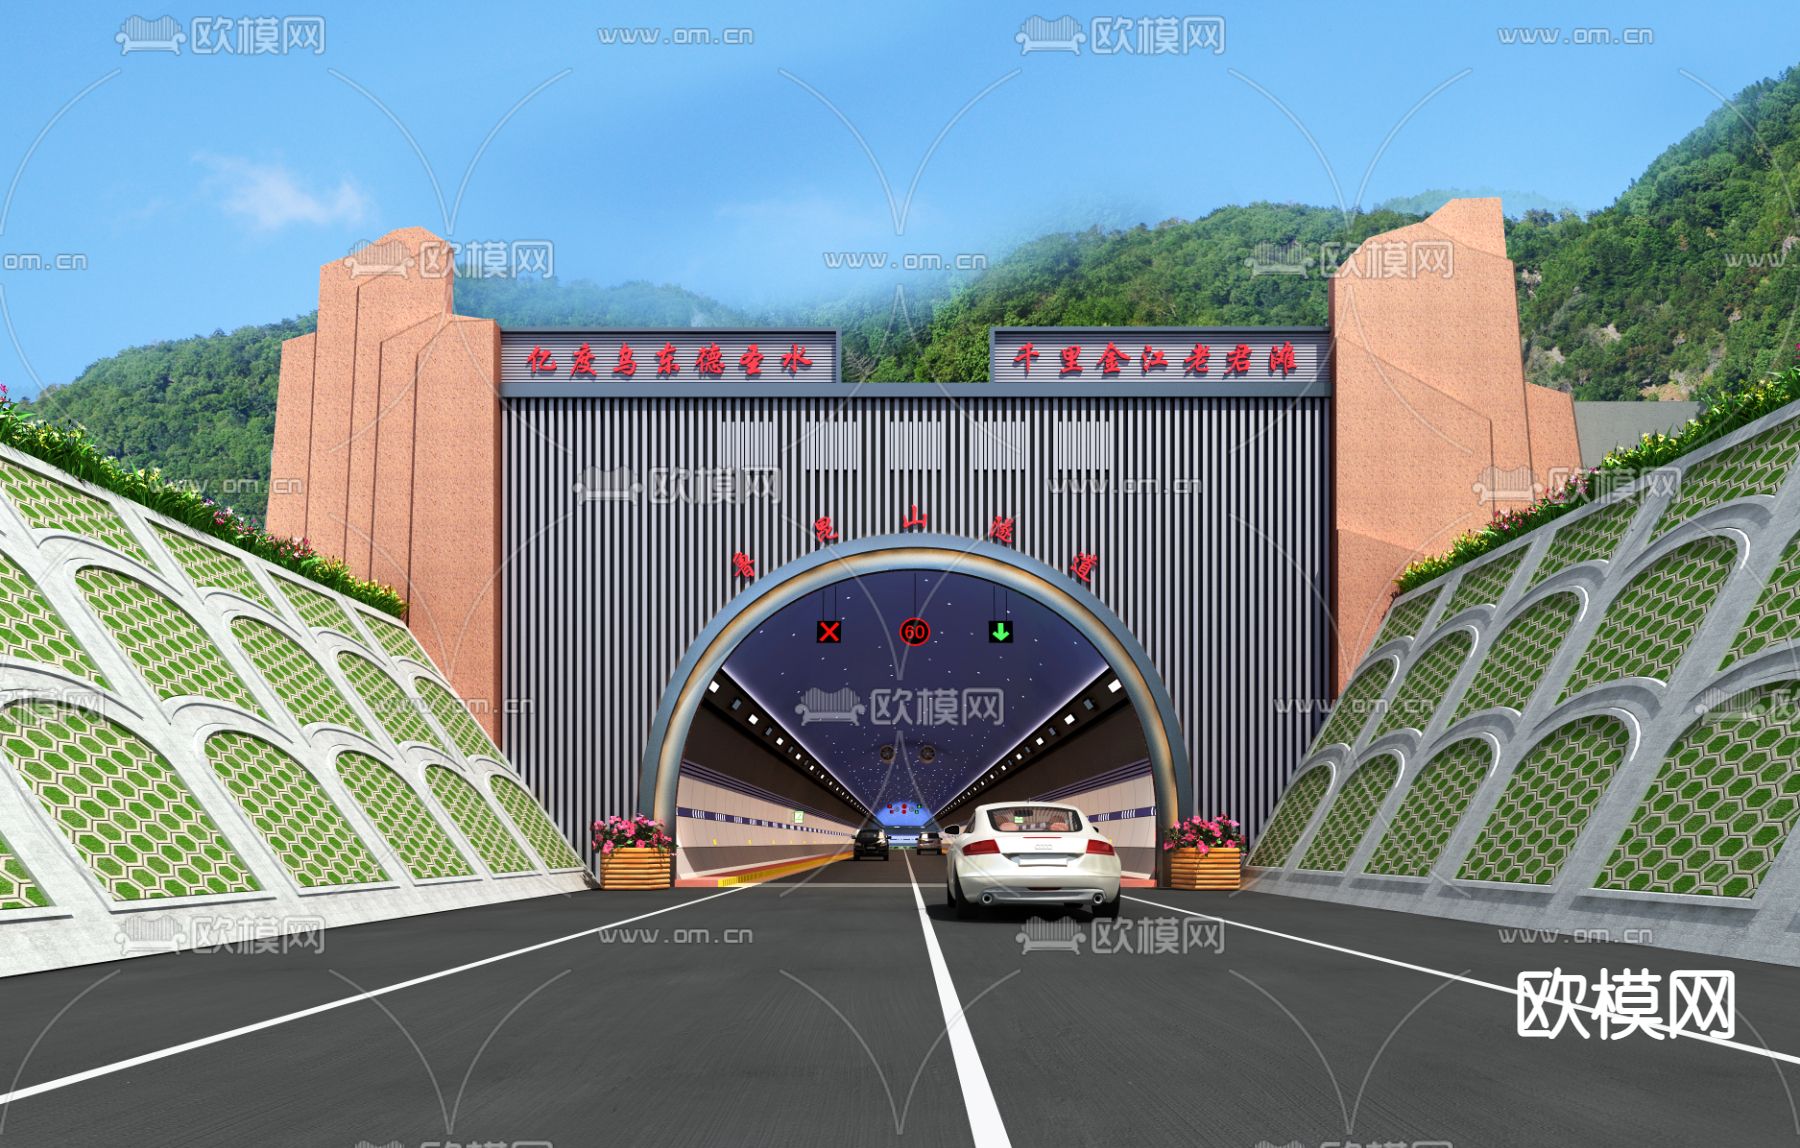 扬子江大道快速化改造工程设计 - 典型项目 - 苏交科集团股份有限公司-基础设施领域一站式综合解决方案提供商